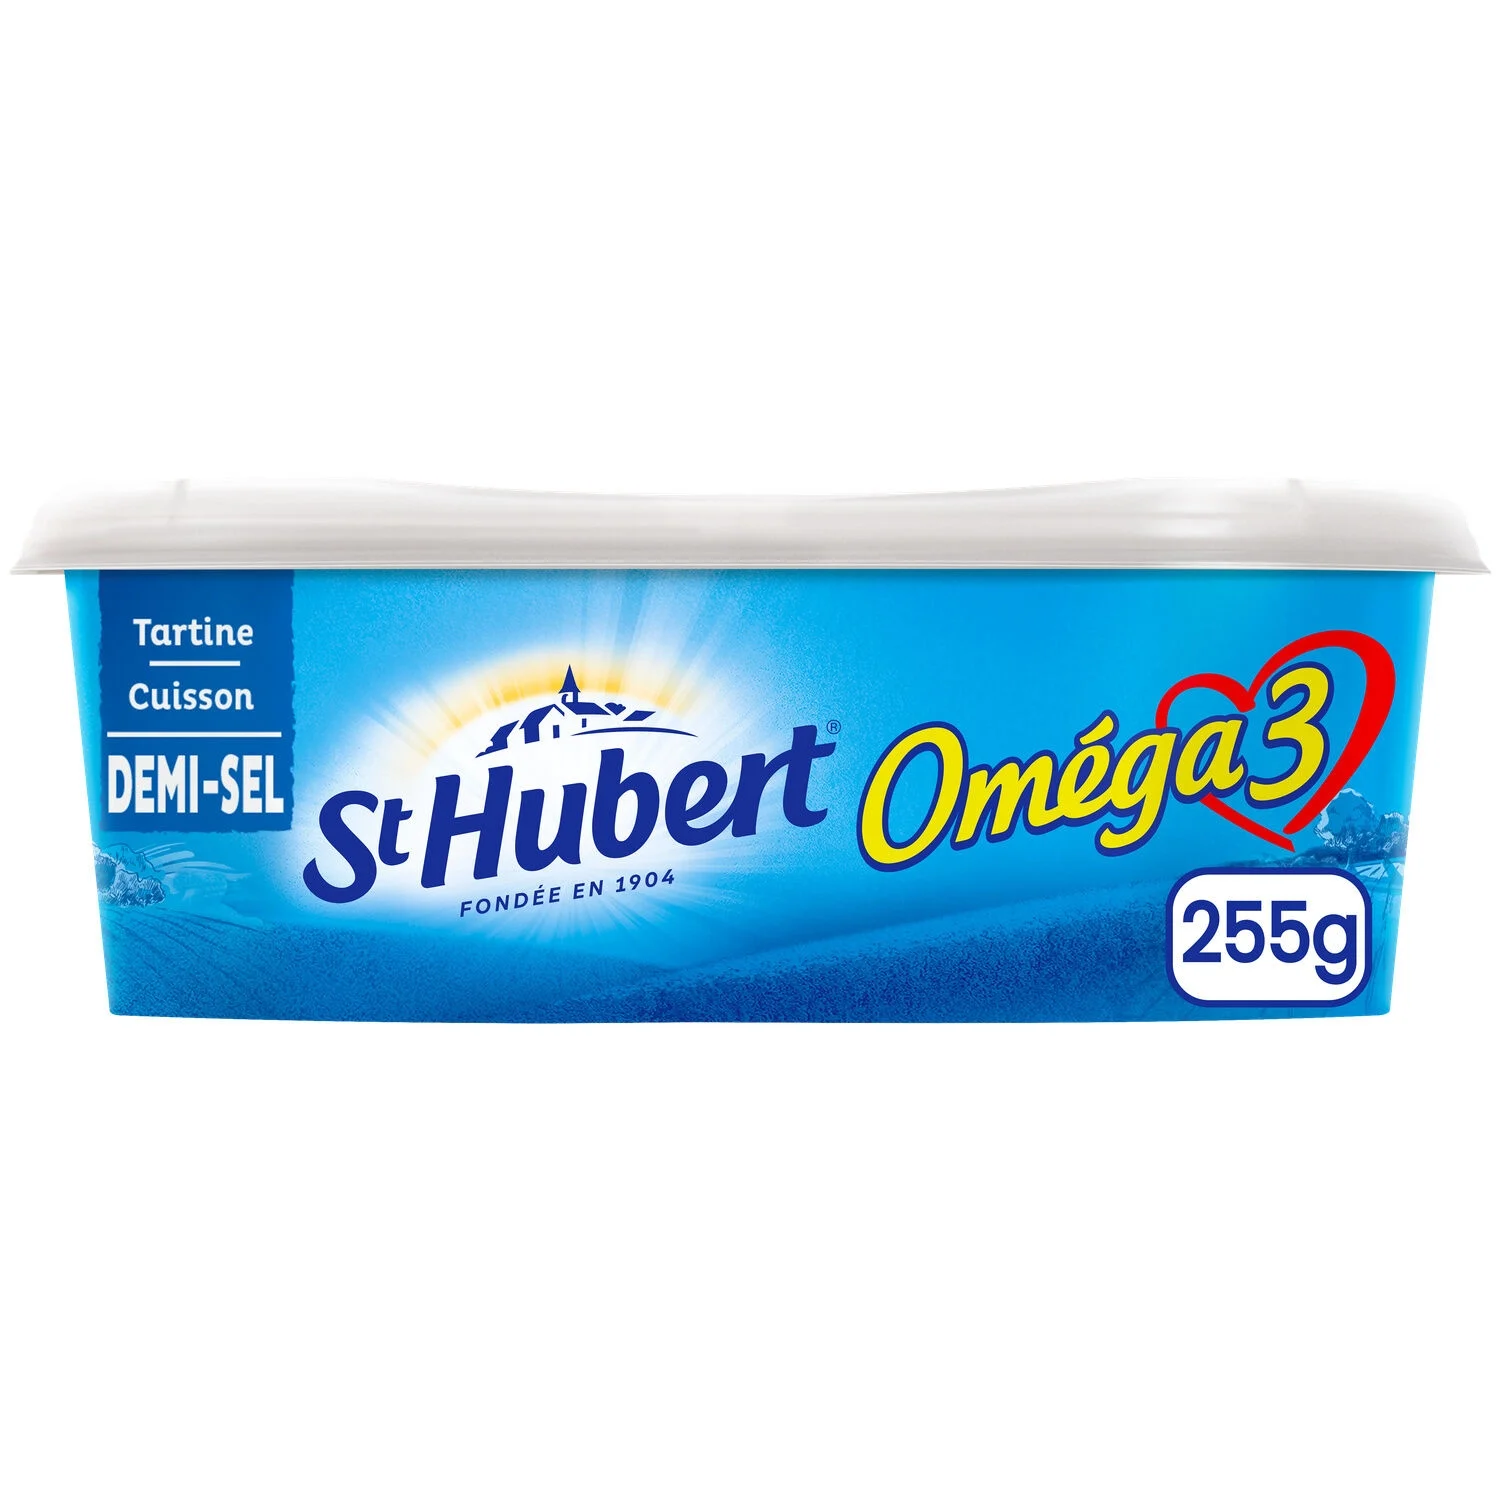 Margarine Demi-sel Oméga 3 Tartine Et Cuisson 255g - St Hubert Omega 3